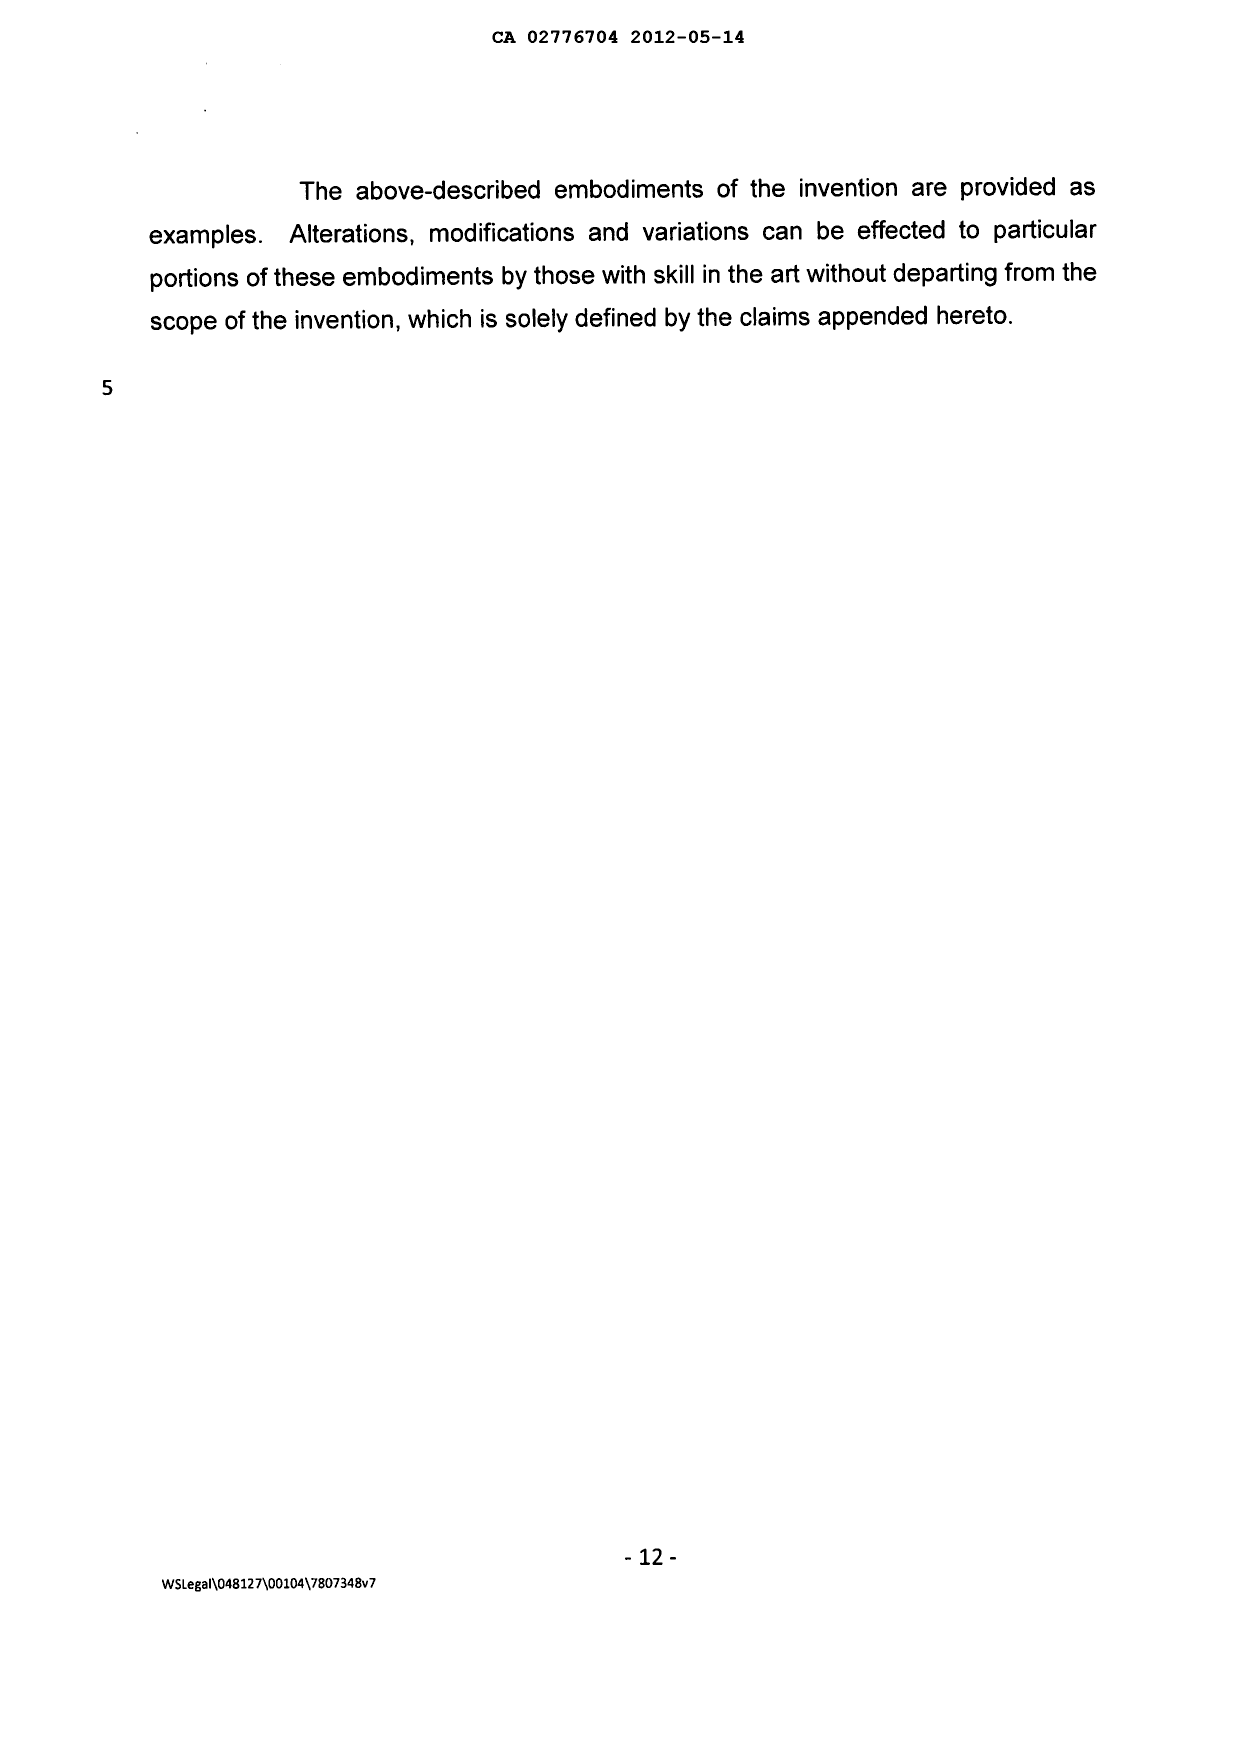 Document de brevet canadien 2776704. Description 20111214. Image 12 de 12